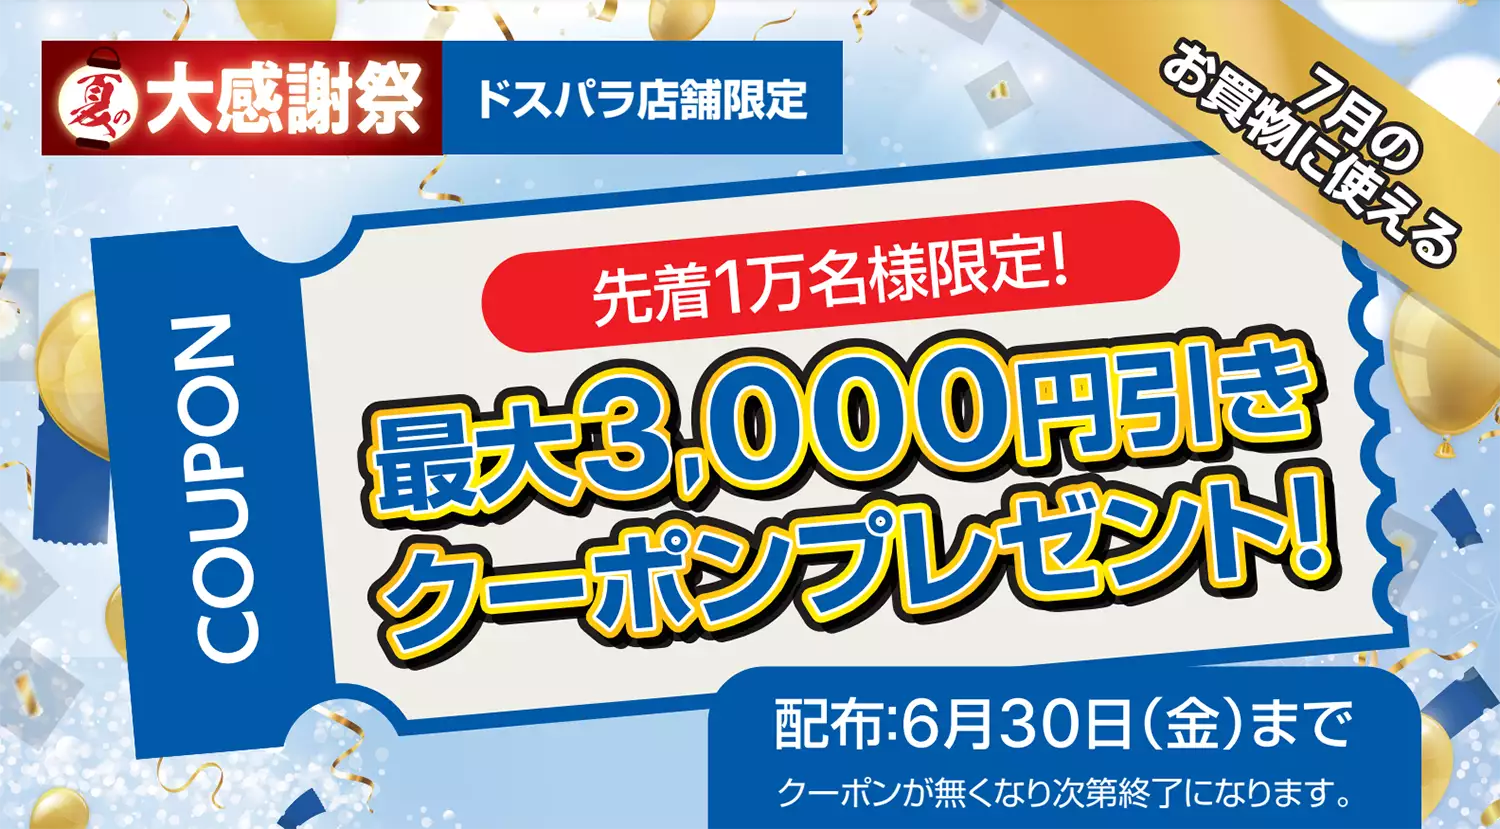 店舗限定 最大3,000円引きクーポンプレゼントキャンペーン